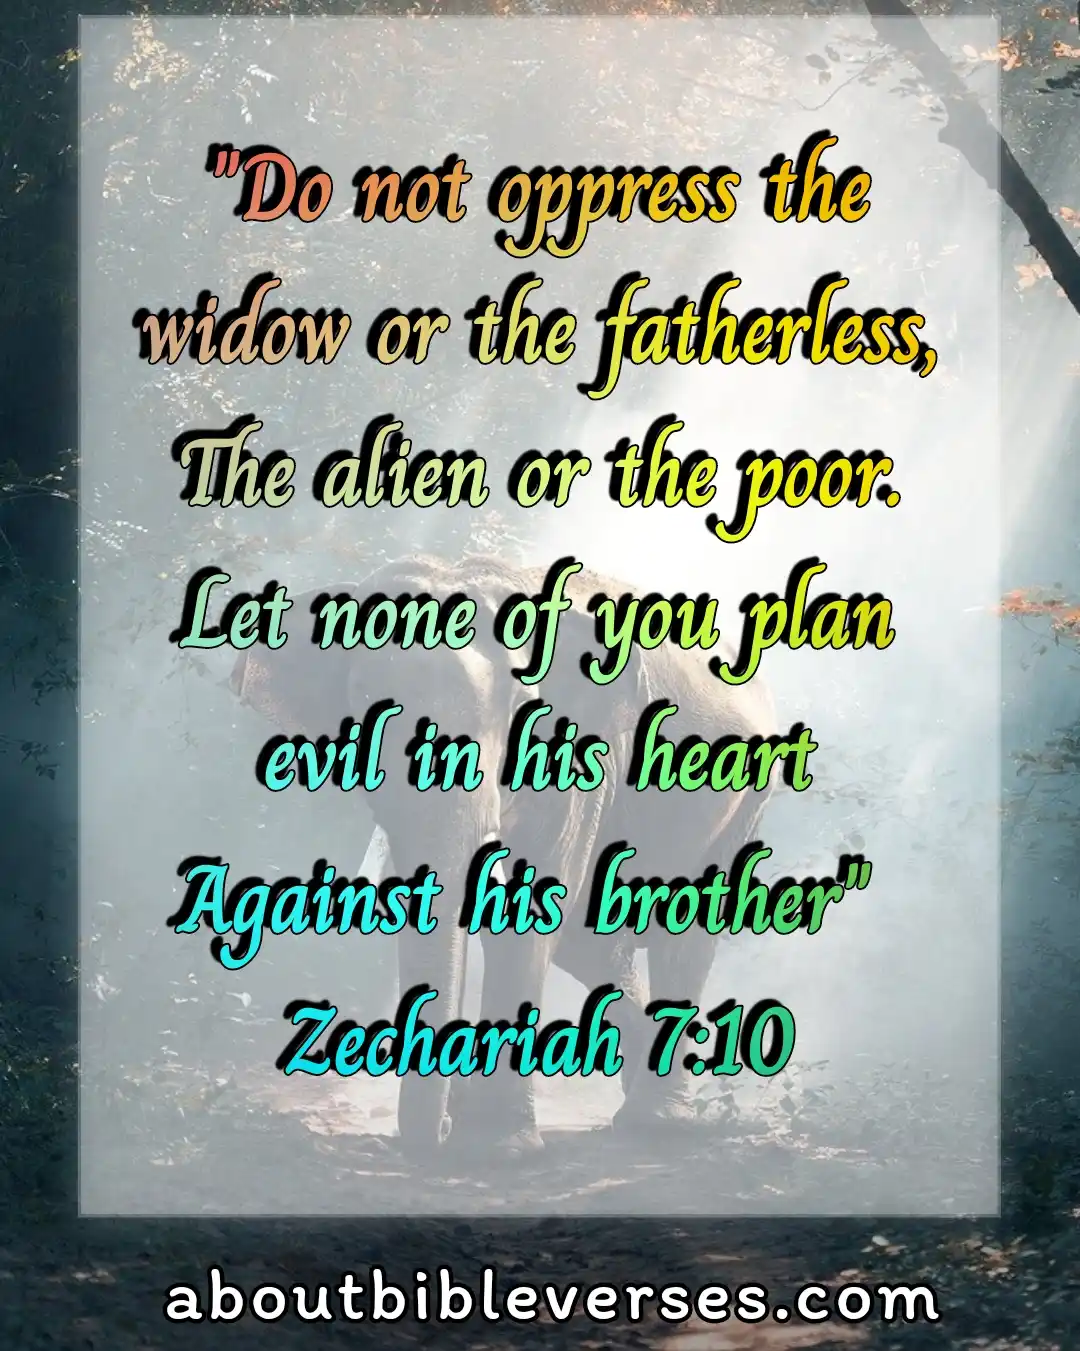 bible verses about widows (Zechariah 7:10)